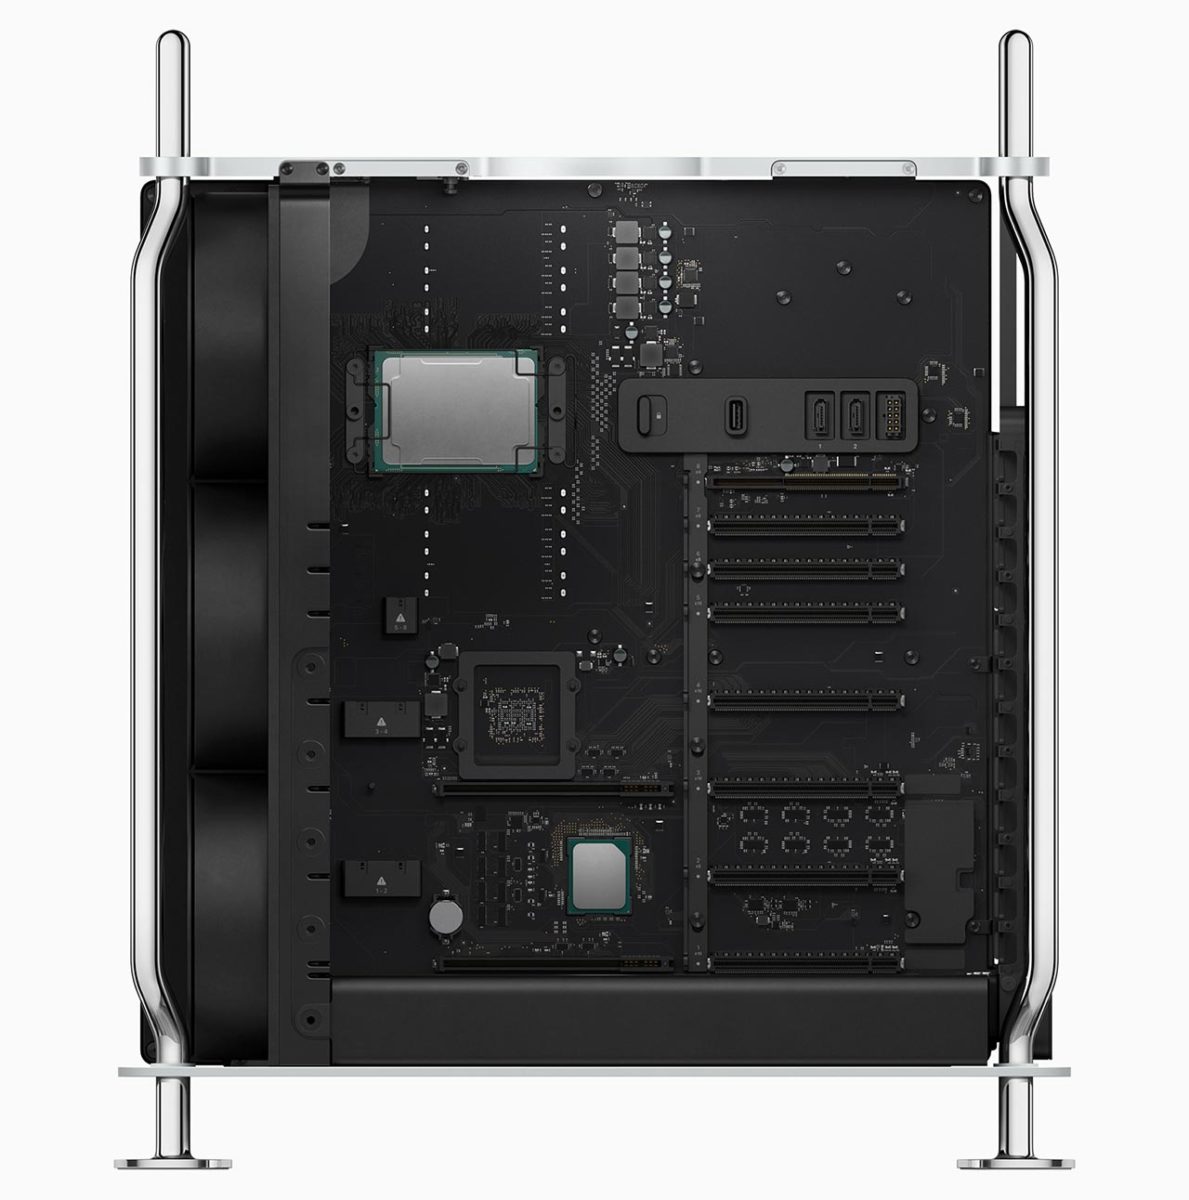 Mac Pro incorpora procesadores Intel Xeon avanzados de hasta 28 núcleos, y ofrece un rendimiento espectacular junto a un enorme ancho de banda